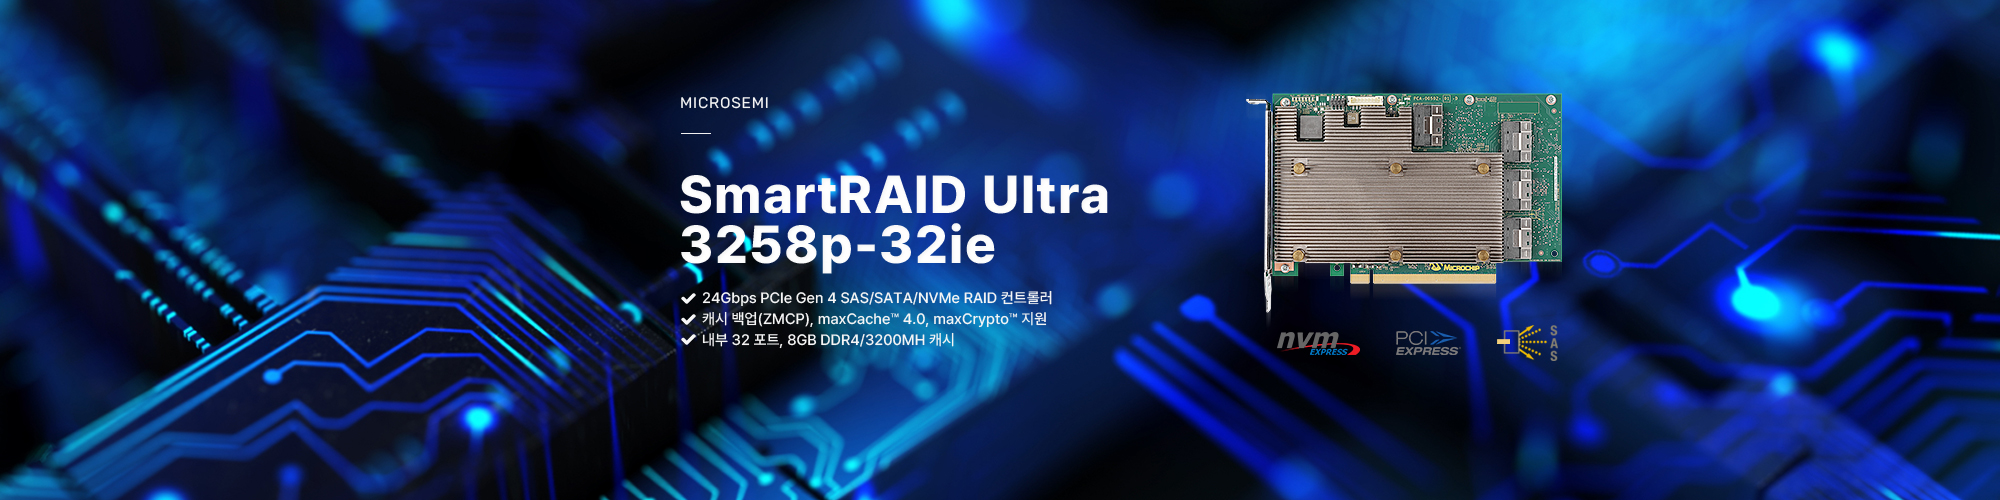 마이크로세미 아답텍 내장 8 포트12Gbps PCIe Gen3 SmartRAID 컨트롤러, SmartRAID 3154-8i 제품보러가기